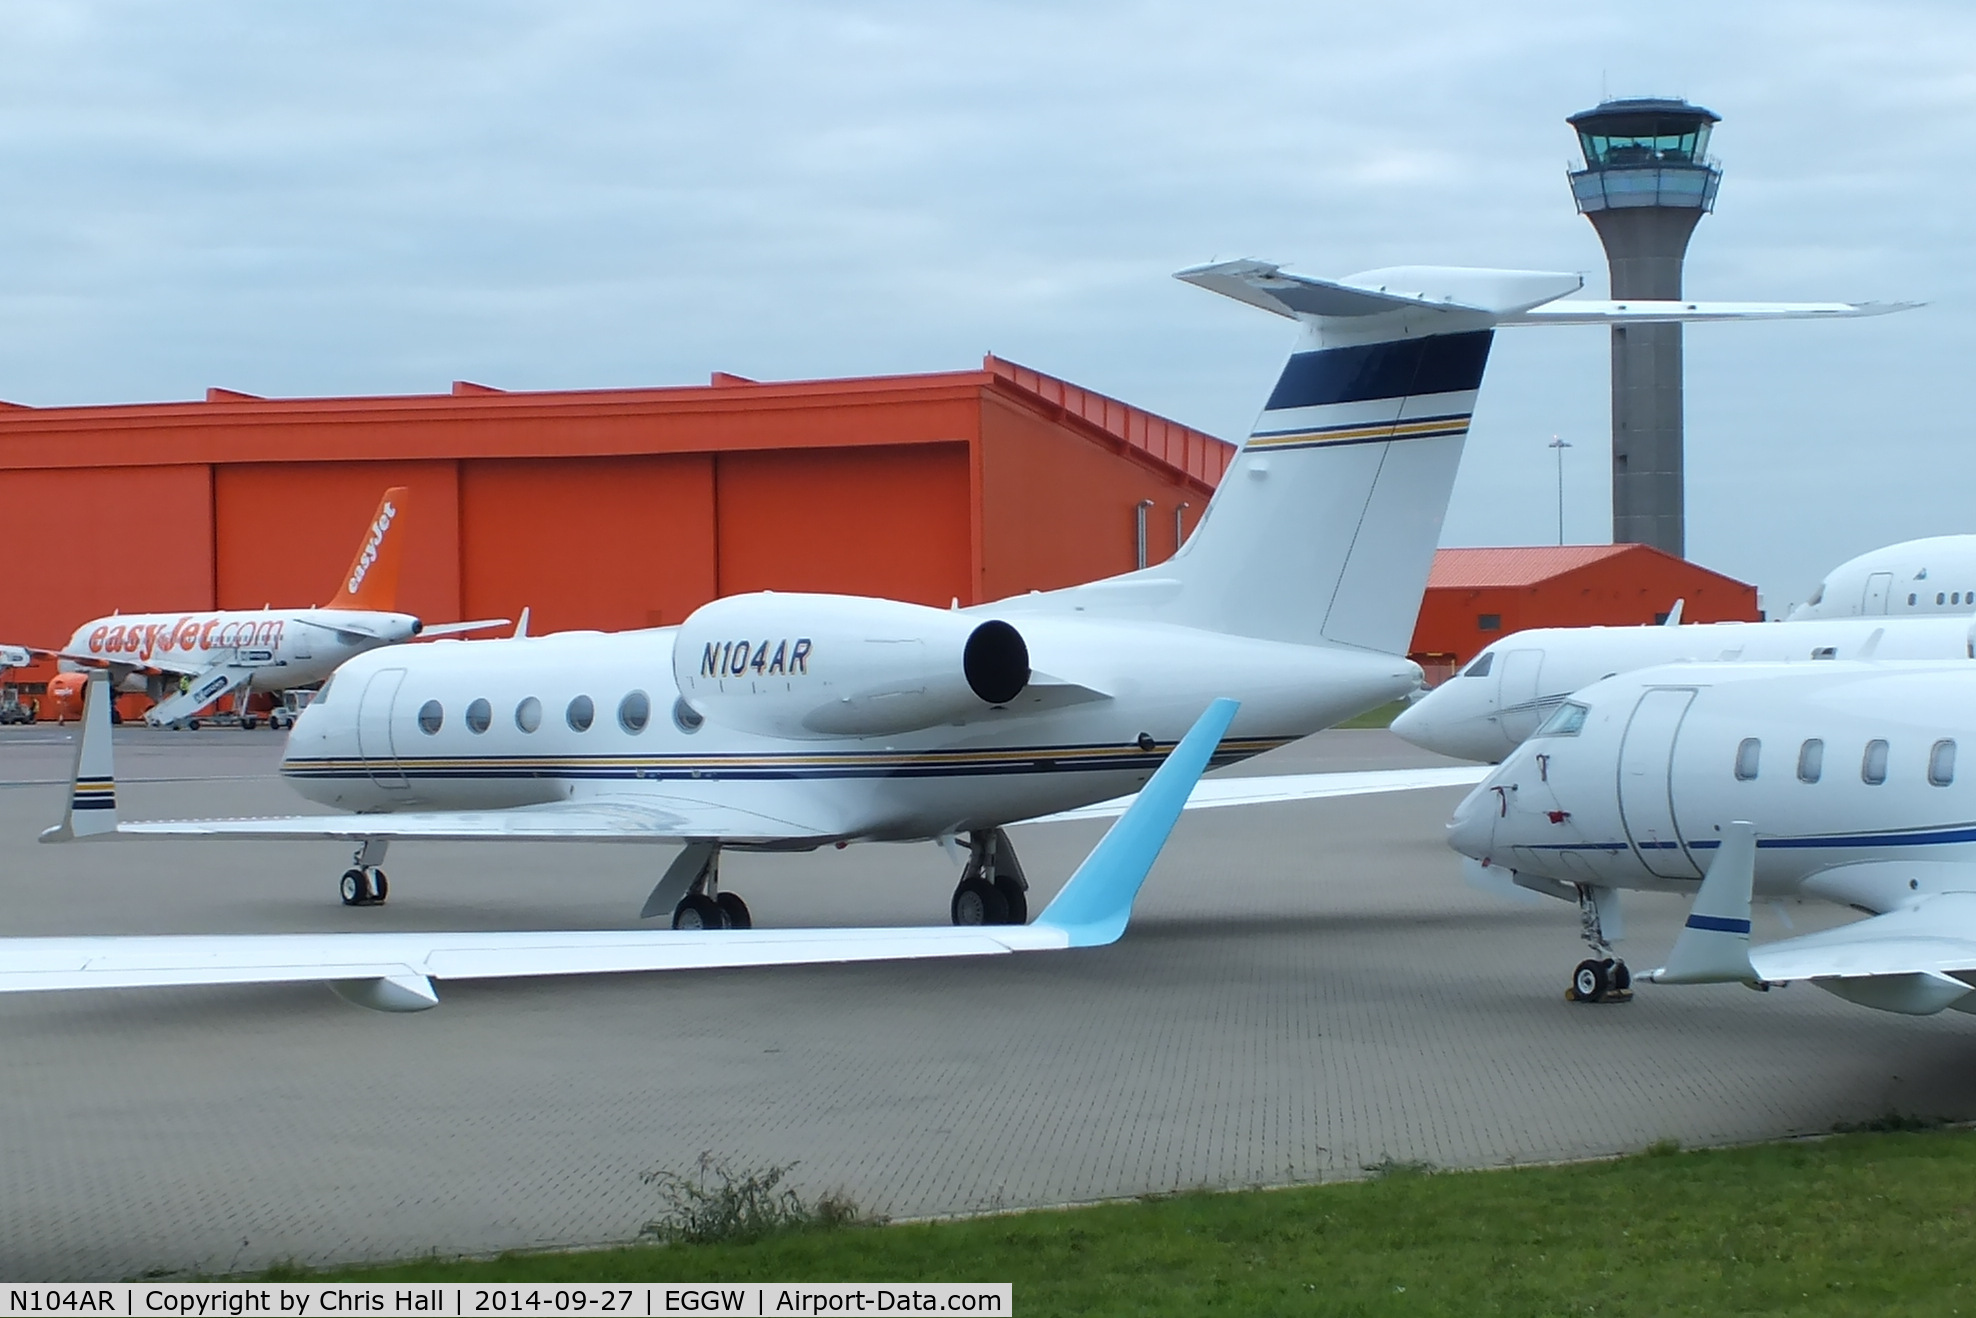 N104AR, 2011 Gulfstream Aerospace GIV-X (G450) C/N 4223, parked at Luton